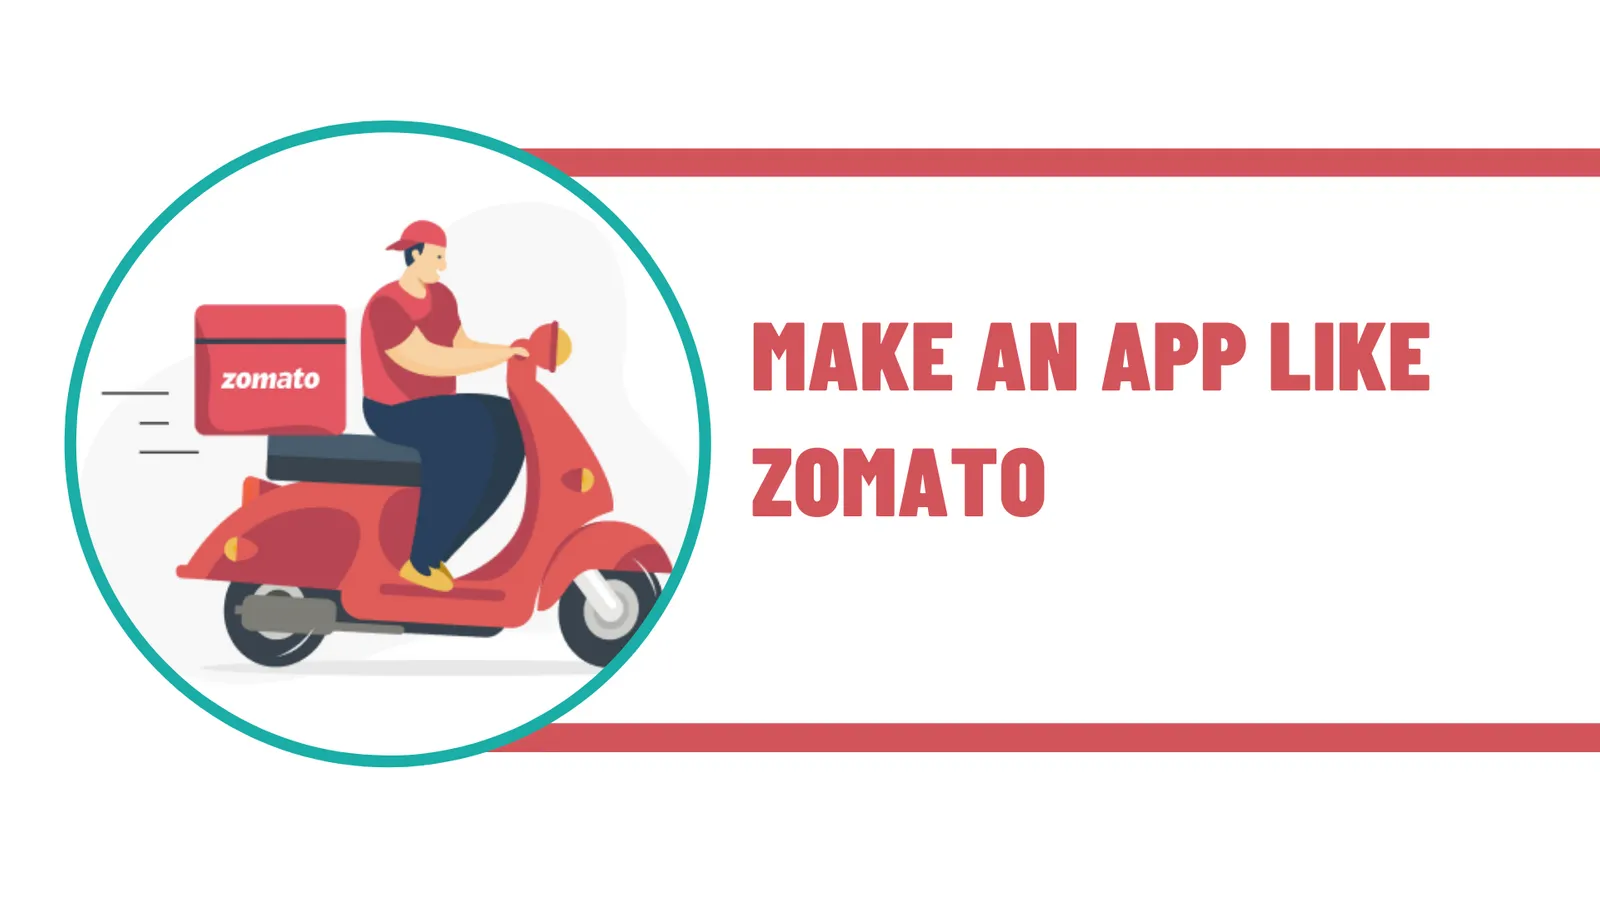 How to Make an App Like Zomato?